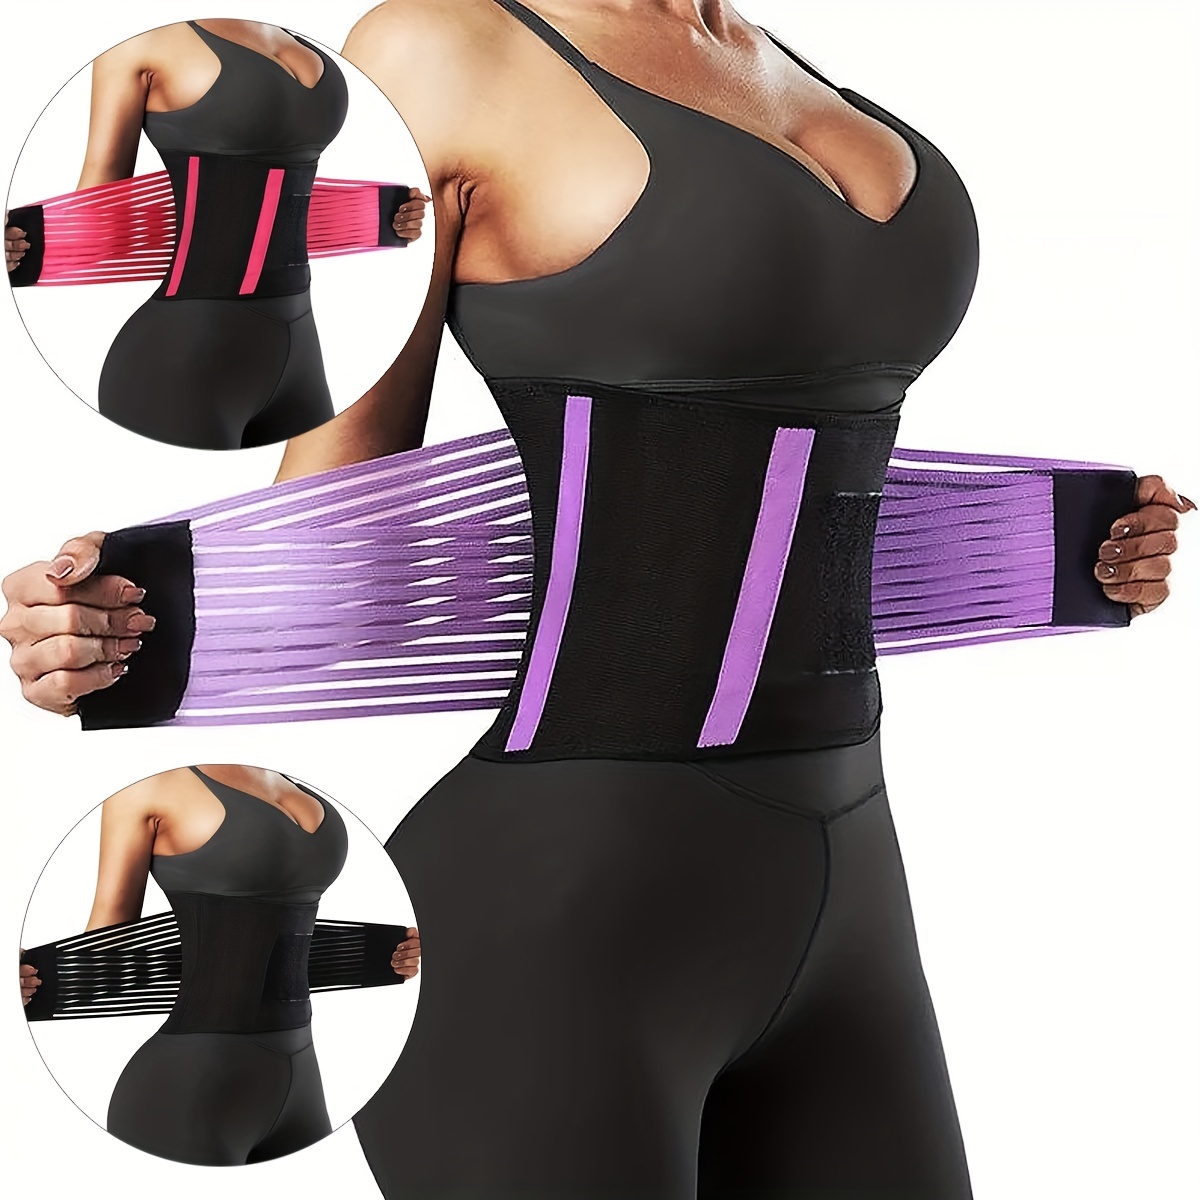 Shape Waist Get Fit Women's Corsets Waist Training Belt Body